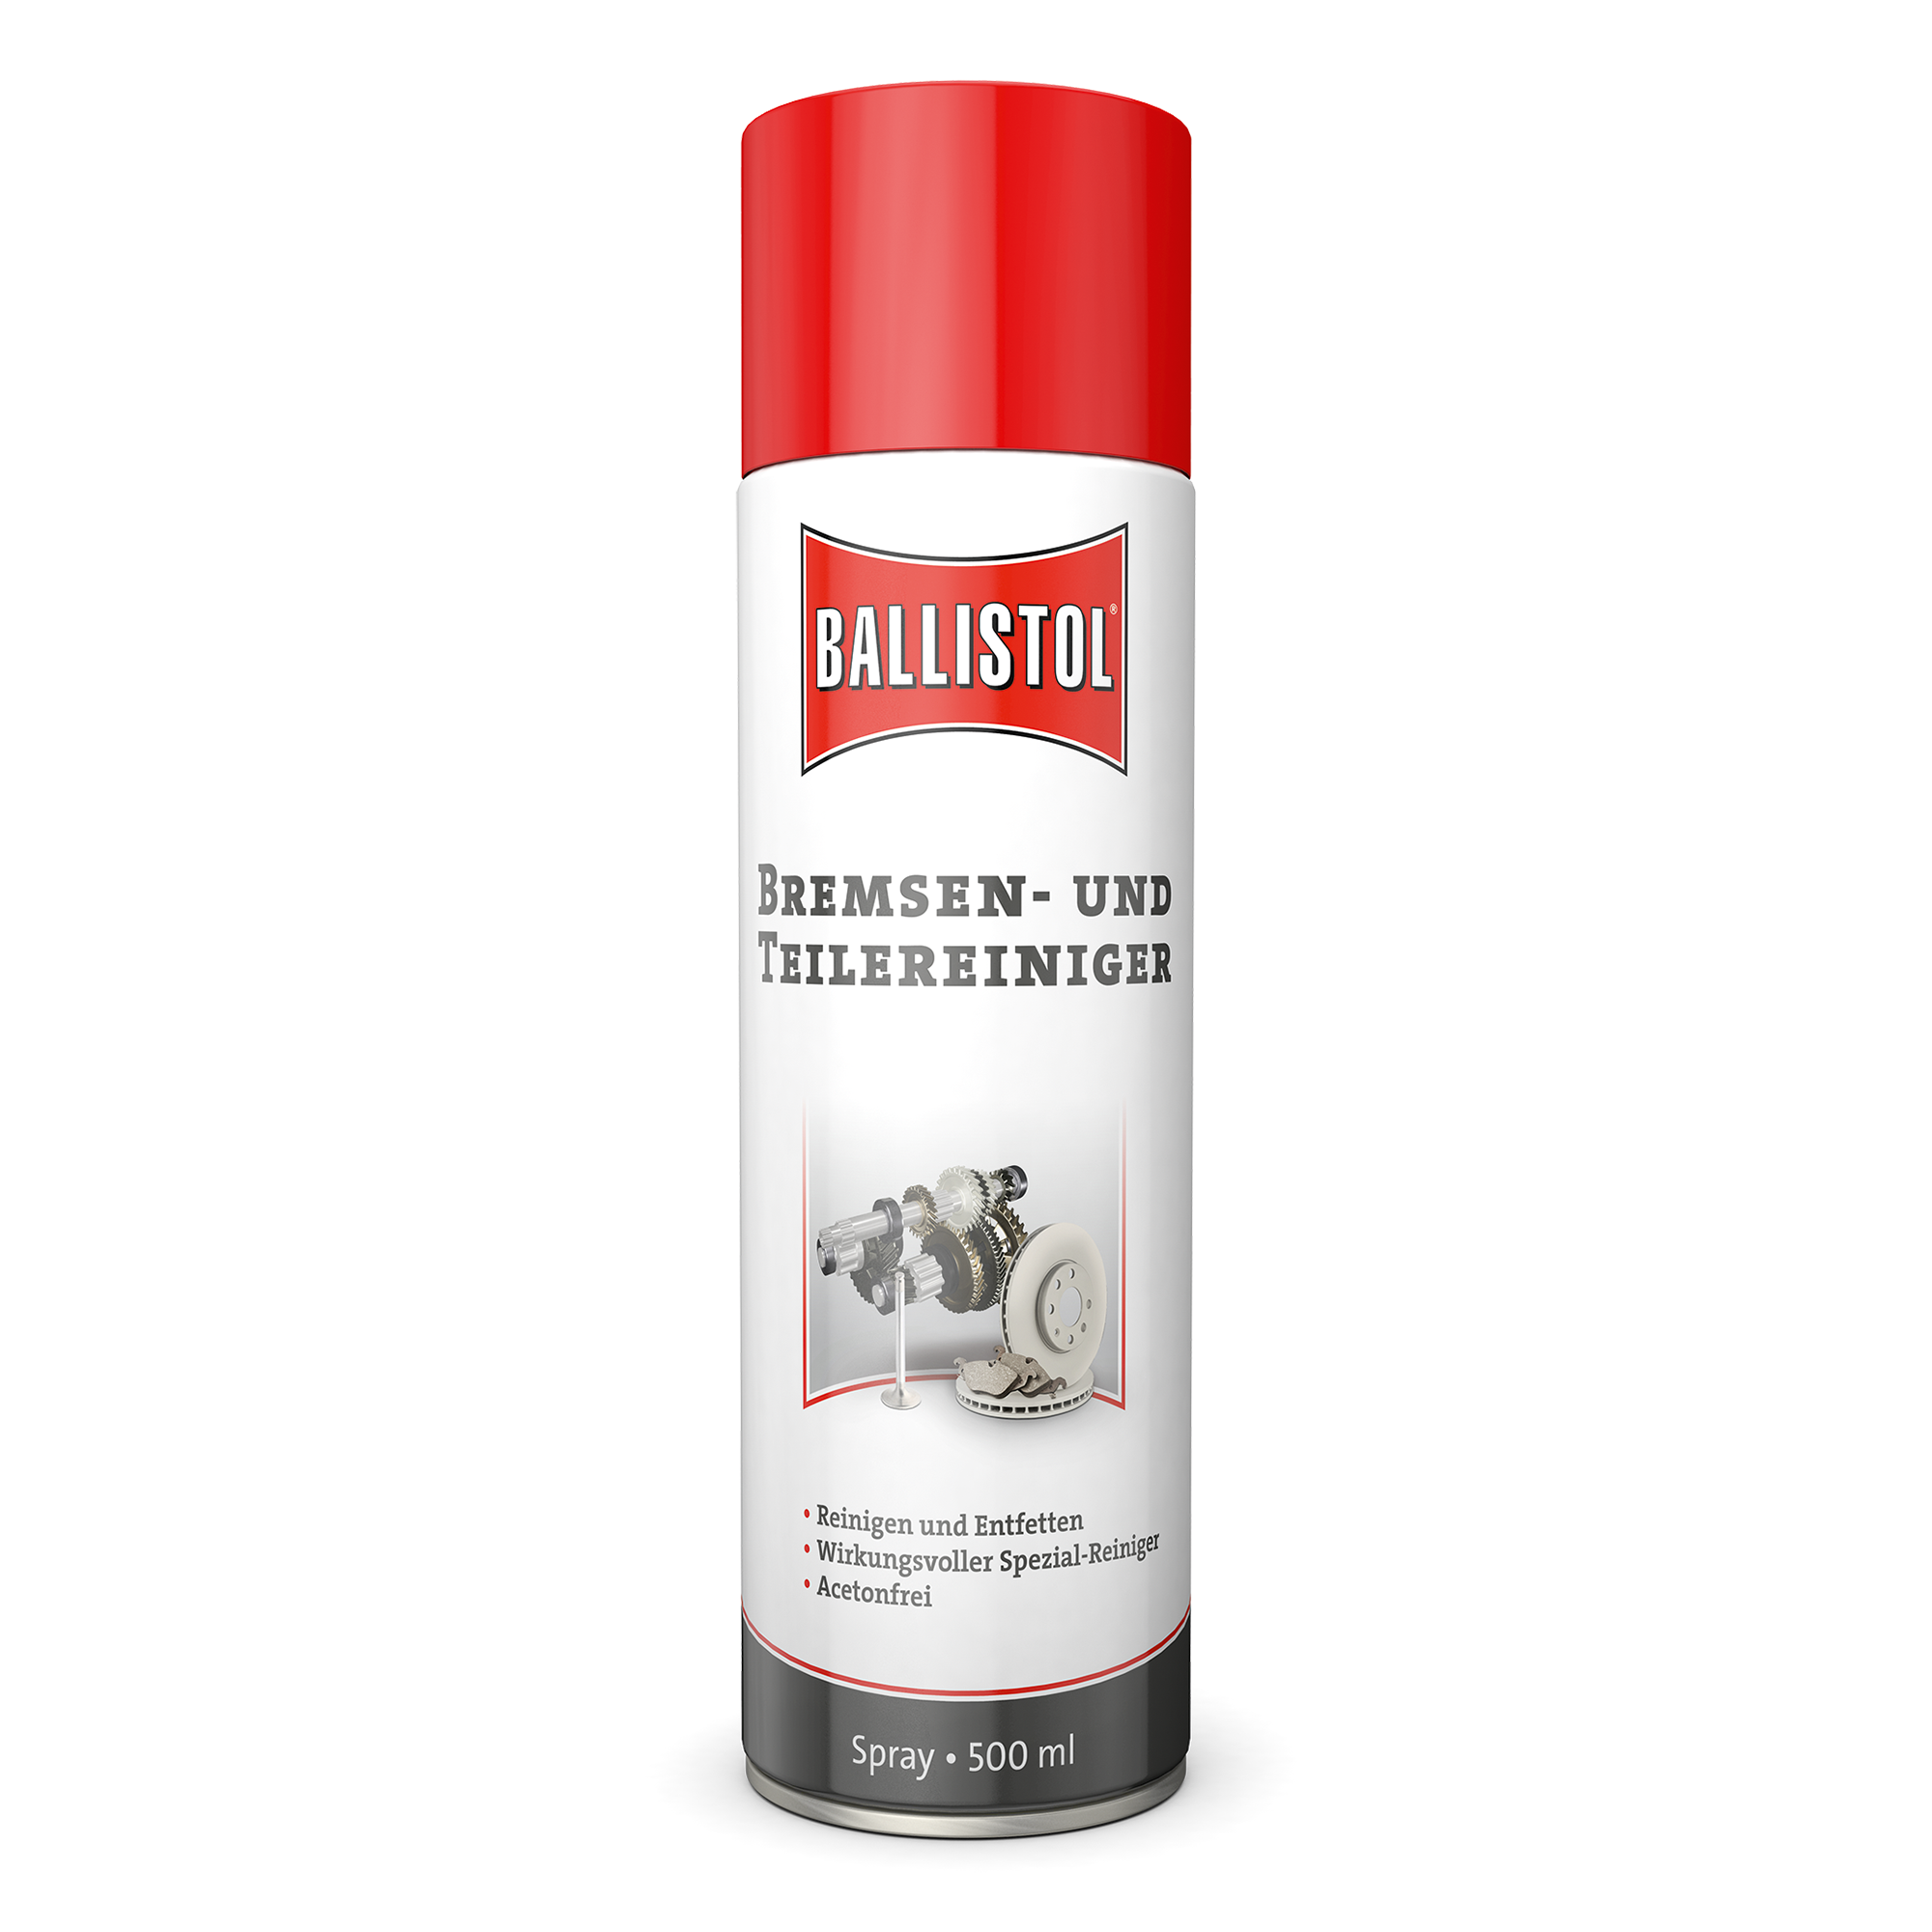 Bremsen- und Teilereiniger-Spray 500 ml + product picture